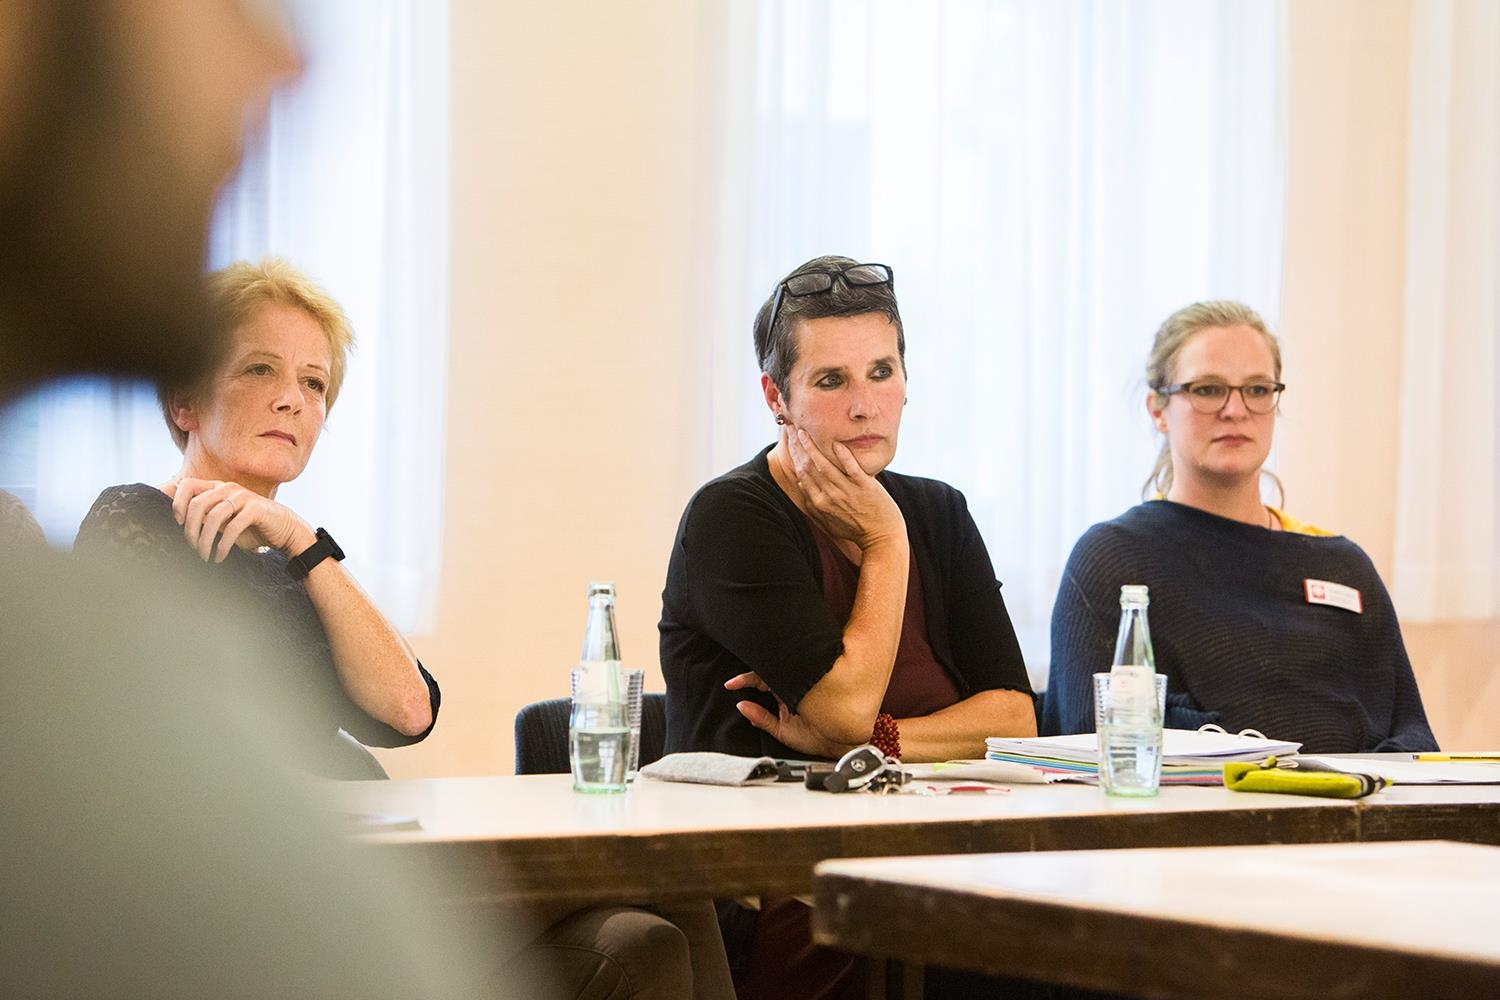 Drei Frauen sitzen an einem Tisch und hören etwas oder jemandem außerhalb des Bildes zu (Deutscher Caritasverband e. V. / Sebastian Pfütze)